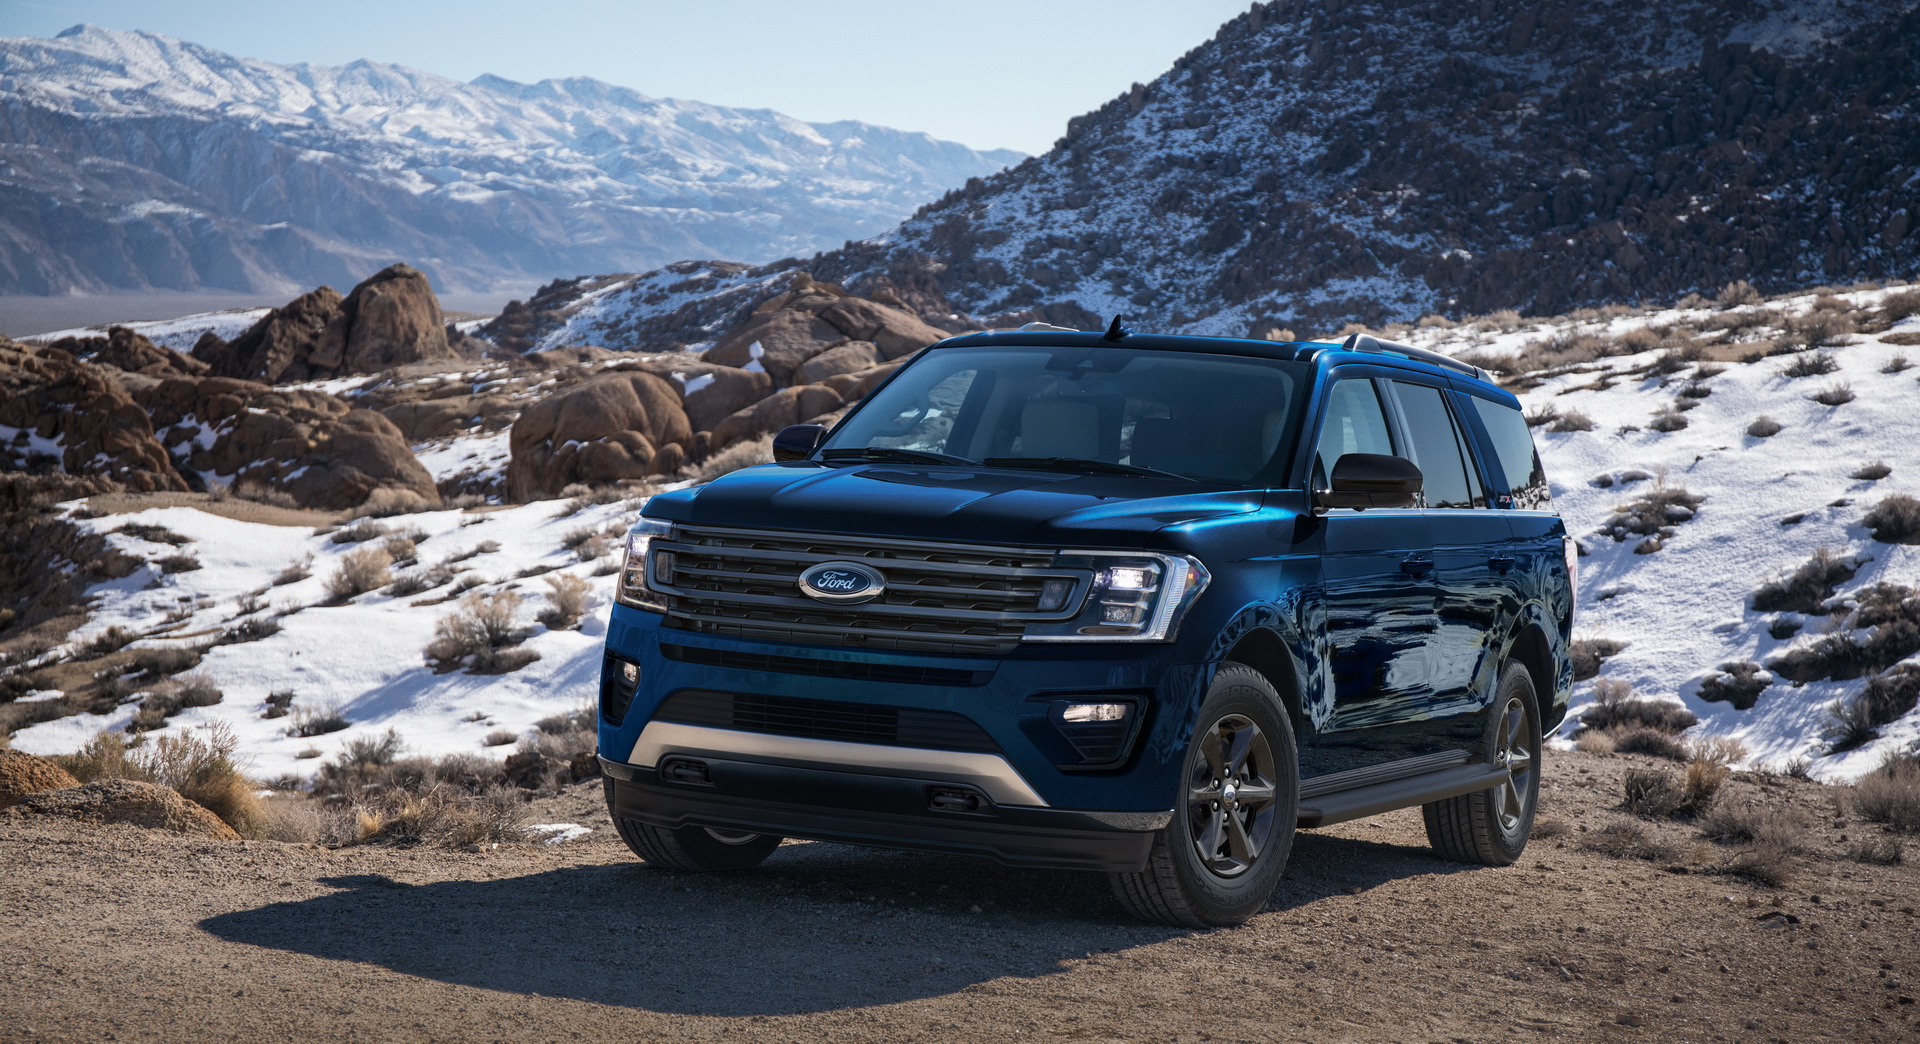 Ford Expedition 2021 phiên bản 5 chỗ ra mắt, giá dưới 50.000 USD 2021-ford-expedition-stx-package-1.jpg